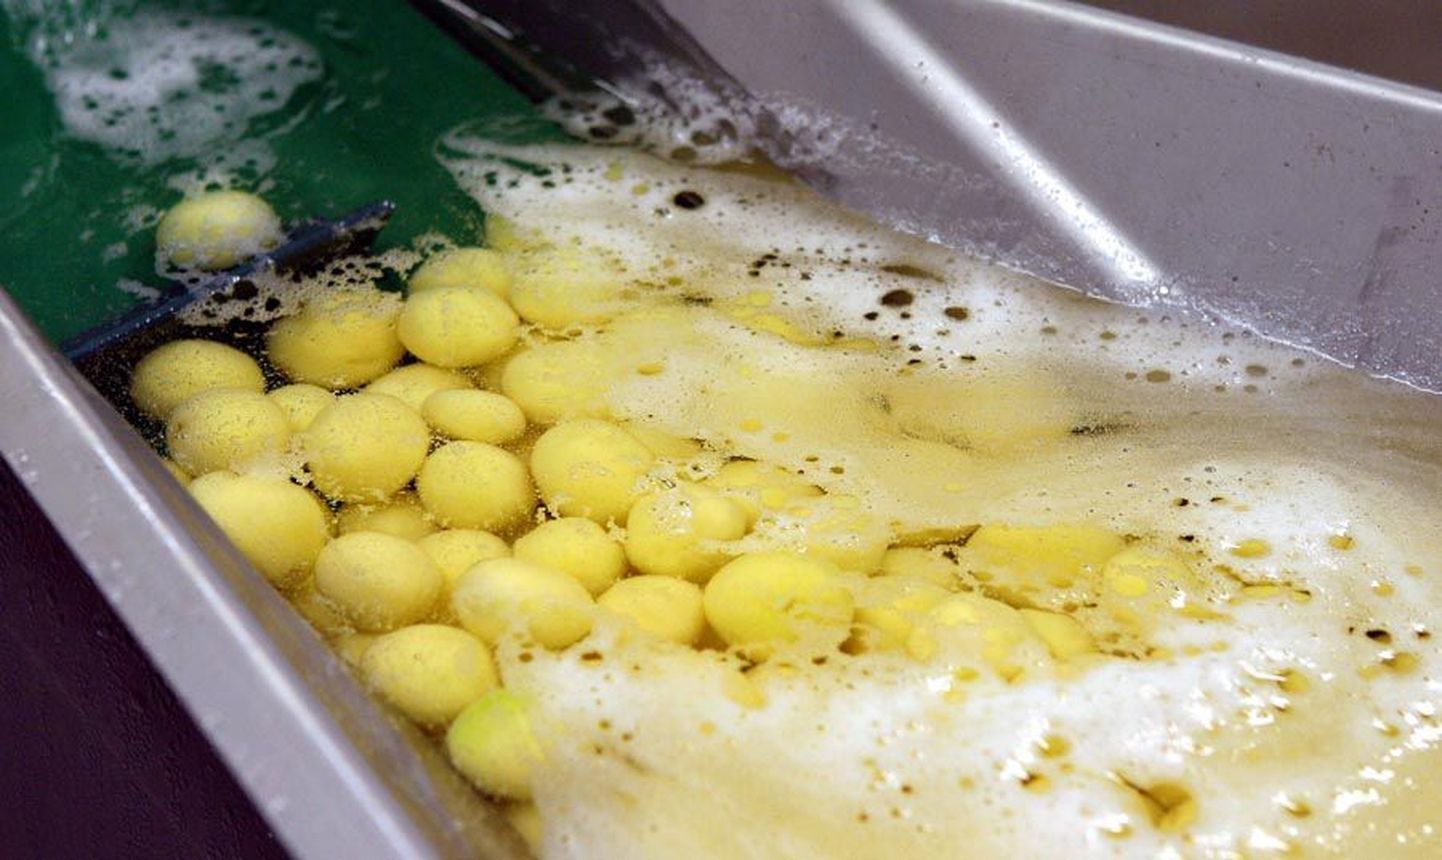 Seni toodi aktsiaseltsi Baltic Restaurants teenindatavatesse koolisööklatesse kooritud kartulid, mis olid siniseks tõmbumise vältimiseks kastetud säilitusainesse. Nüüd lubab suurettevõte hakata lastele pakkuma mugulaid, mille ilusat välimust hoitakse puhtas vees.